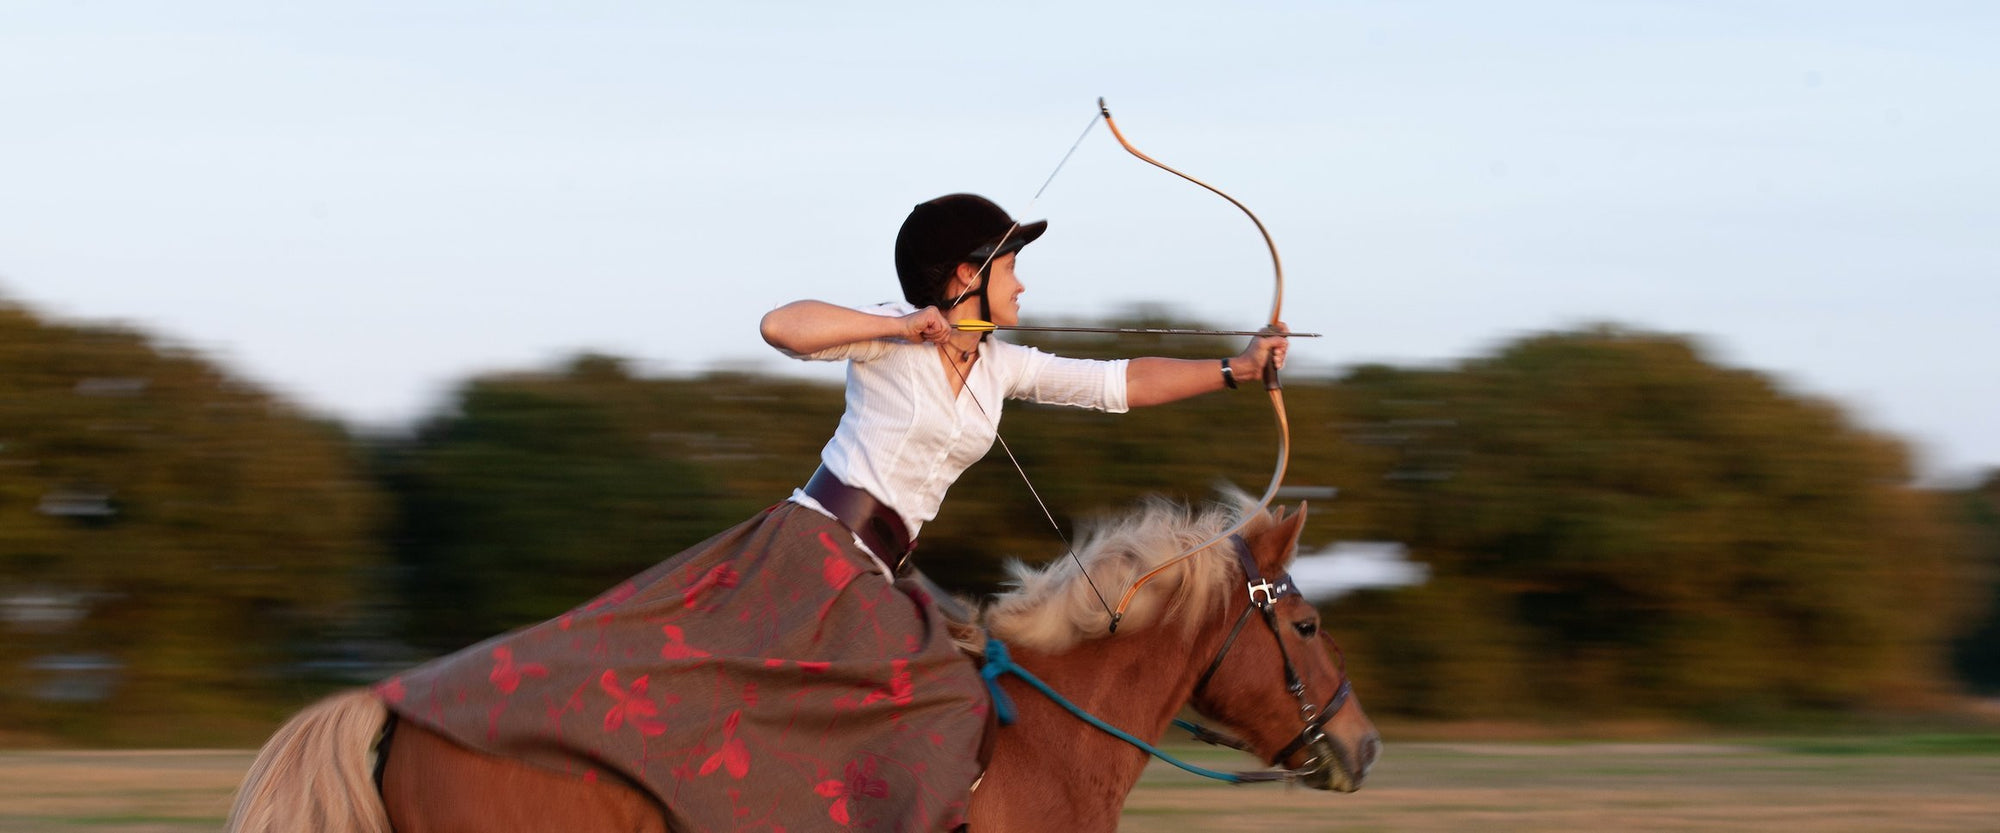 Horseback Archery NOTCH Charms